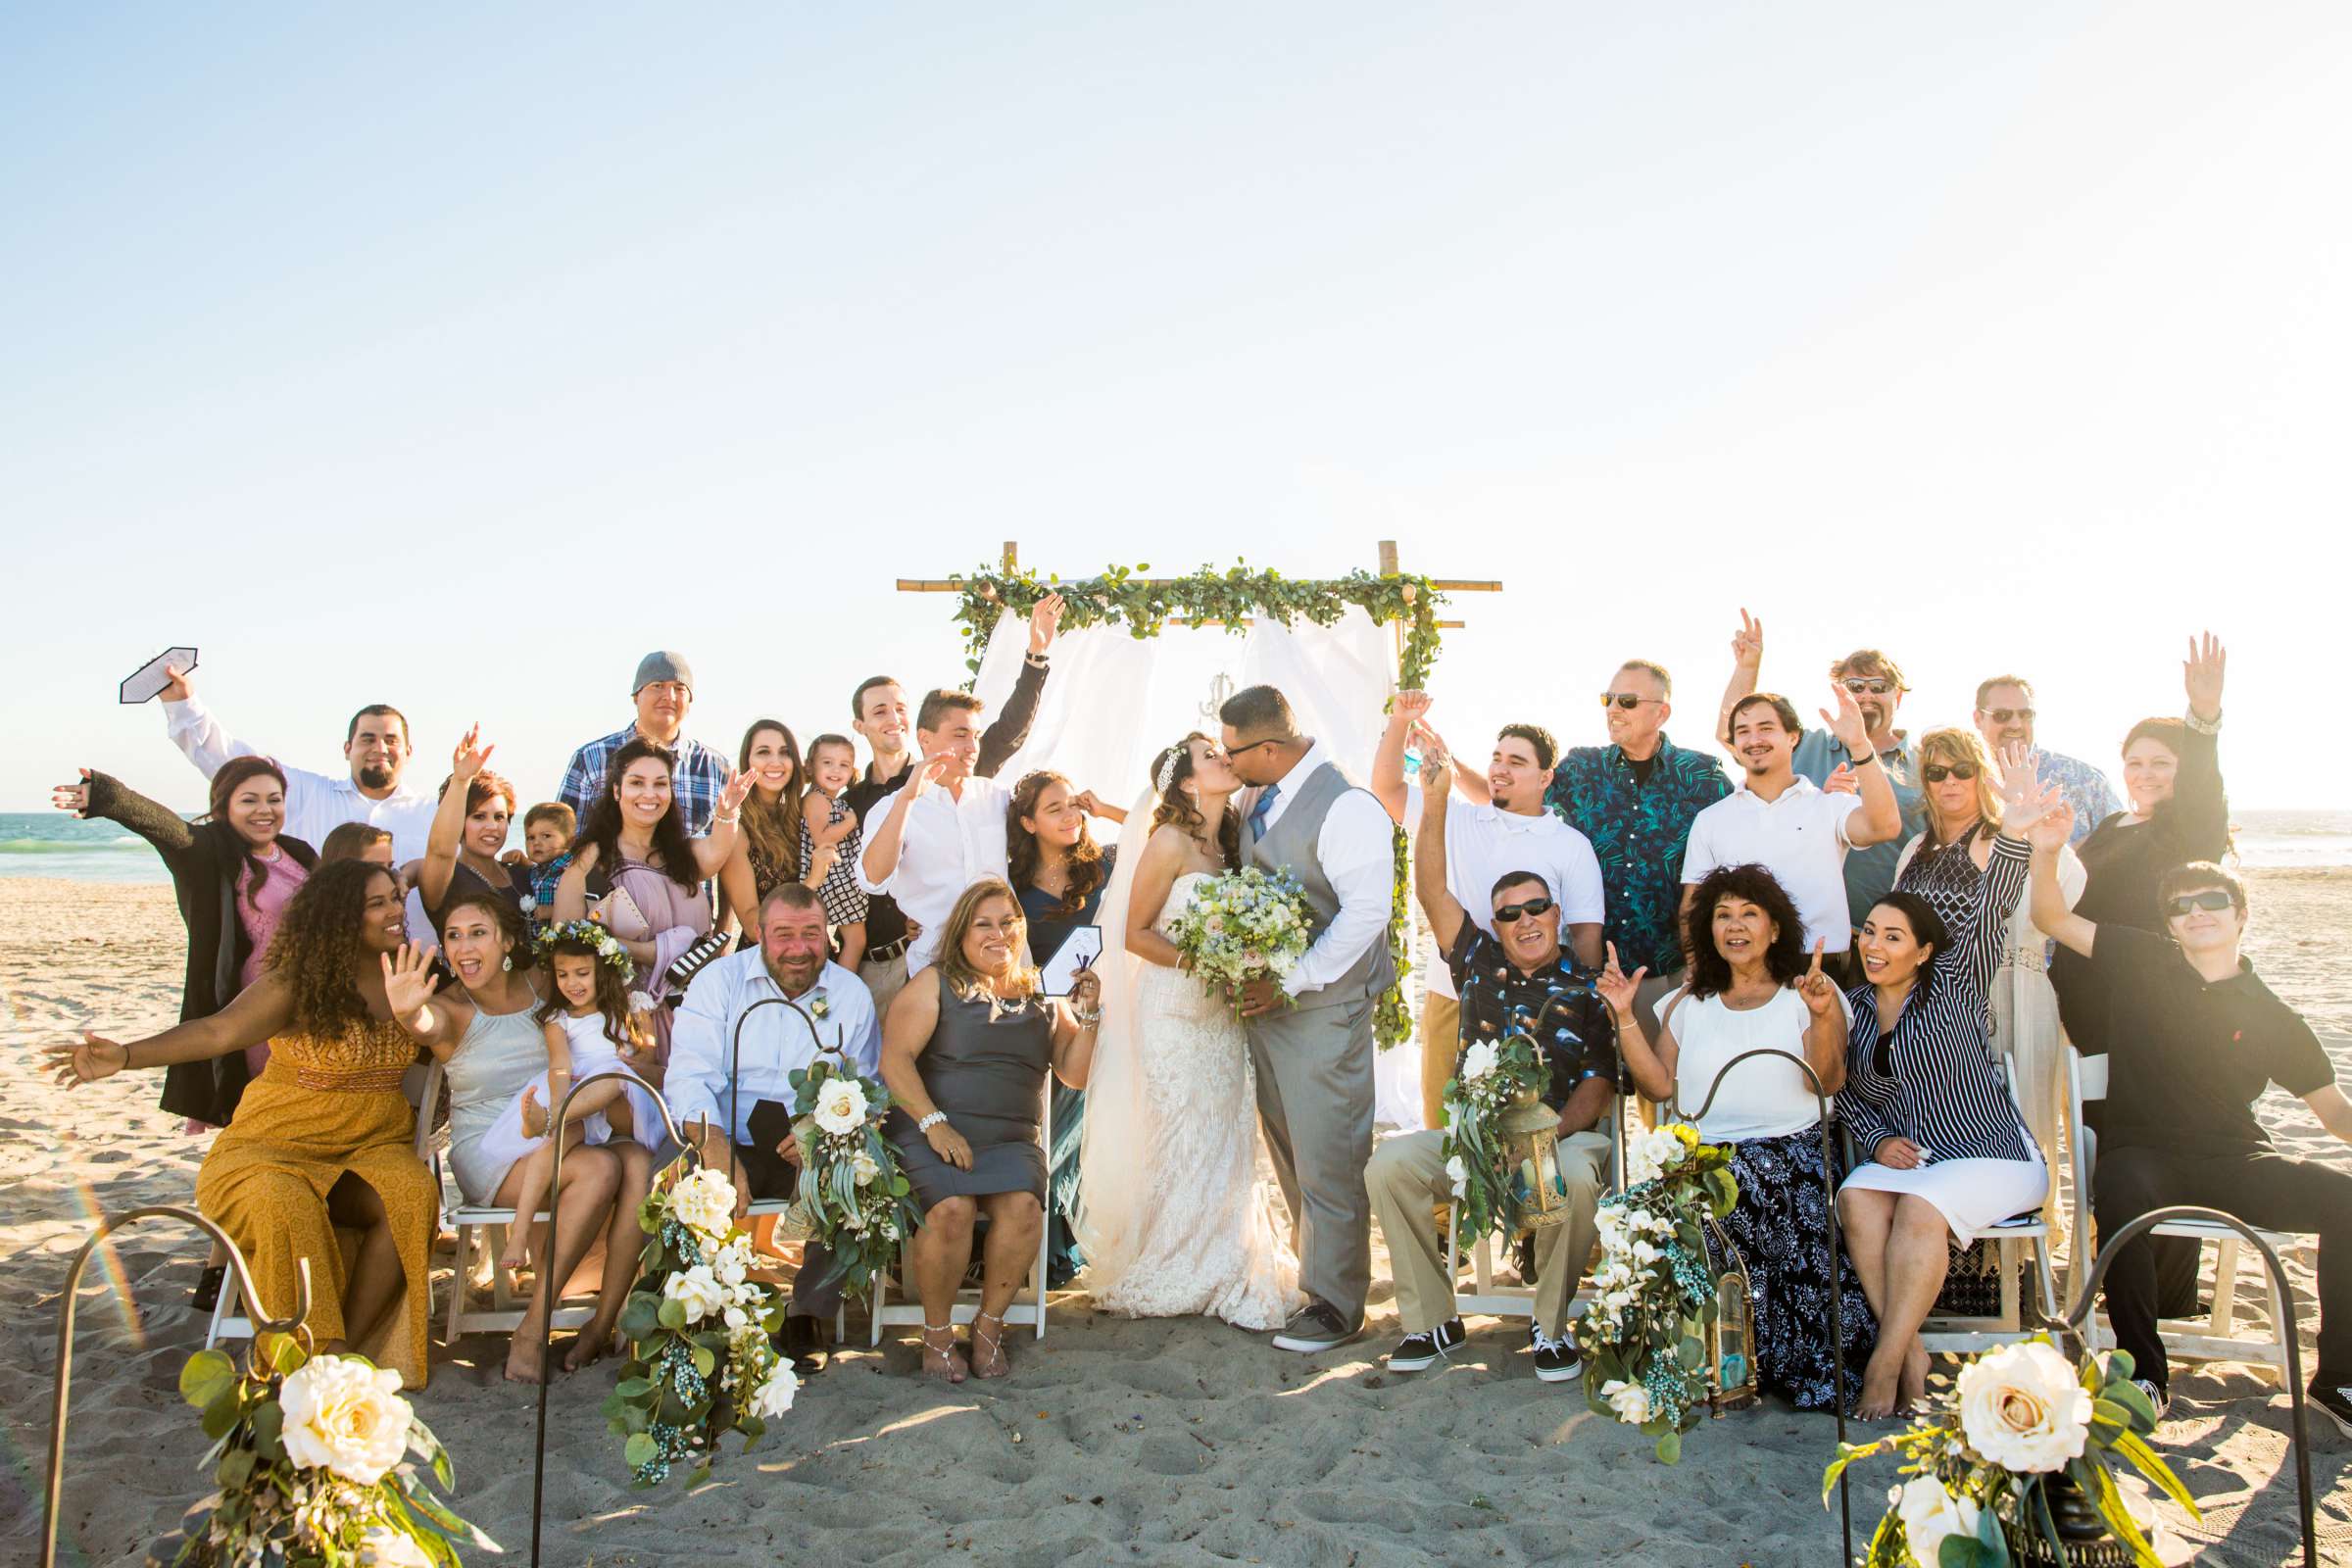 Del Mar Beach Resort Wedding coordinated by La Casa Del Mar, Alisa and Carlos Wedding Photo #380893 by True Photography